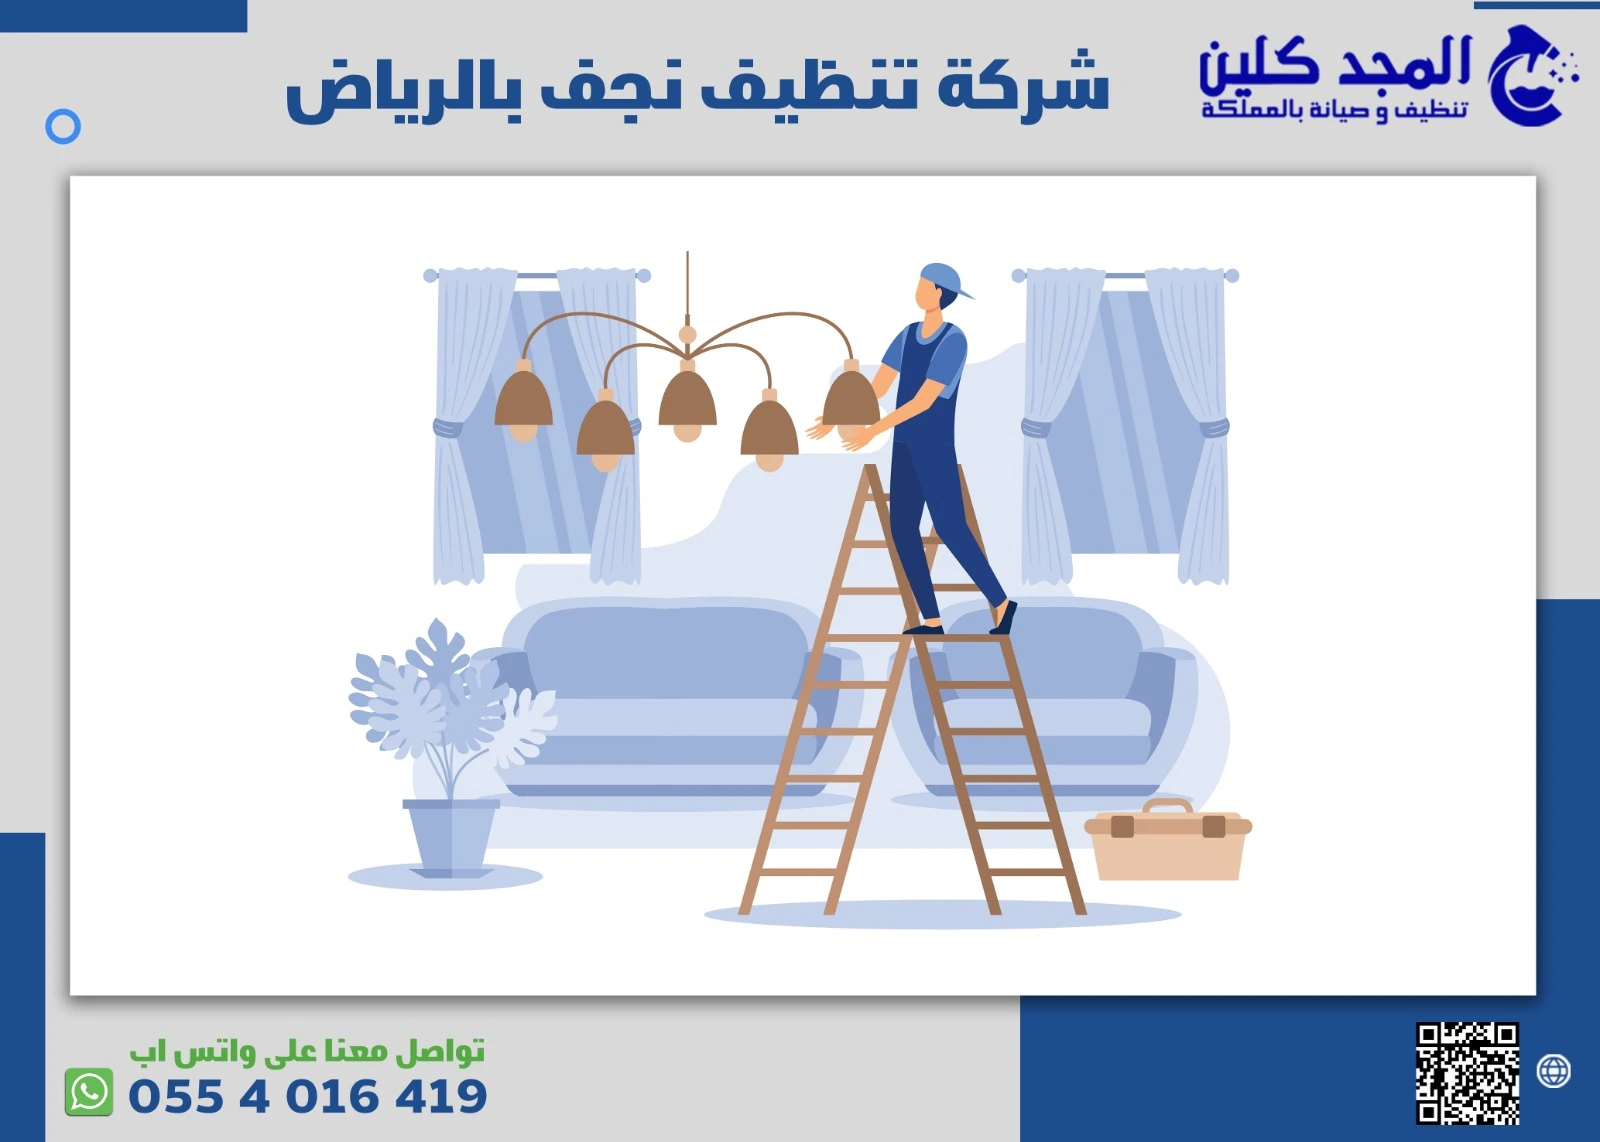 شركة تنظيف نجف بالرياض 0554016419 – ارخص شركة لتنظيف النجف في الرياض